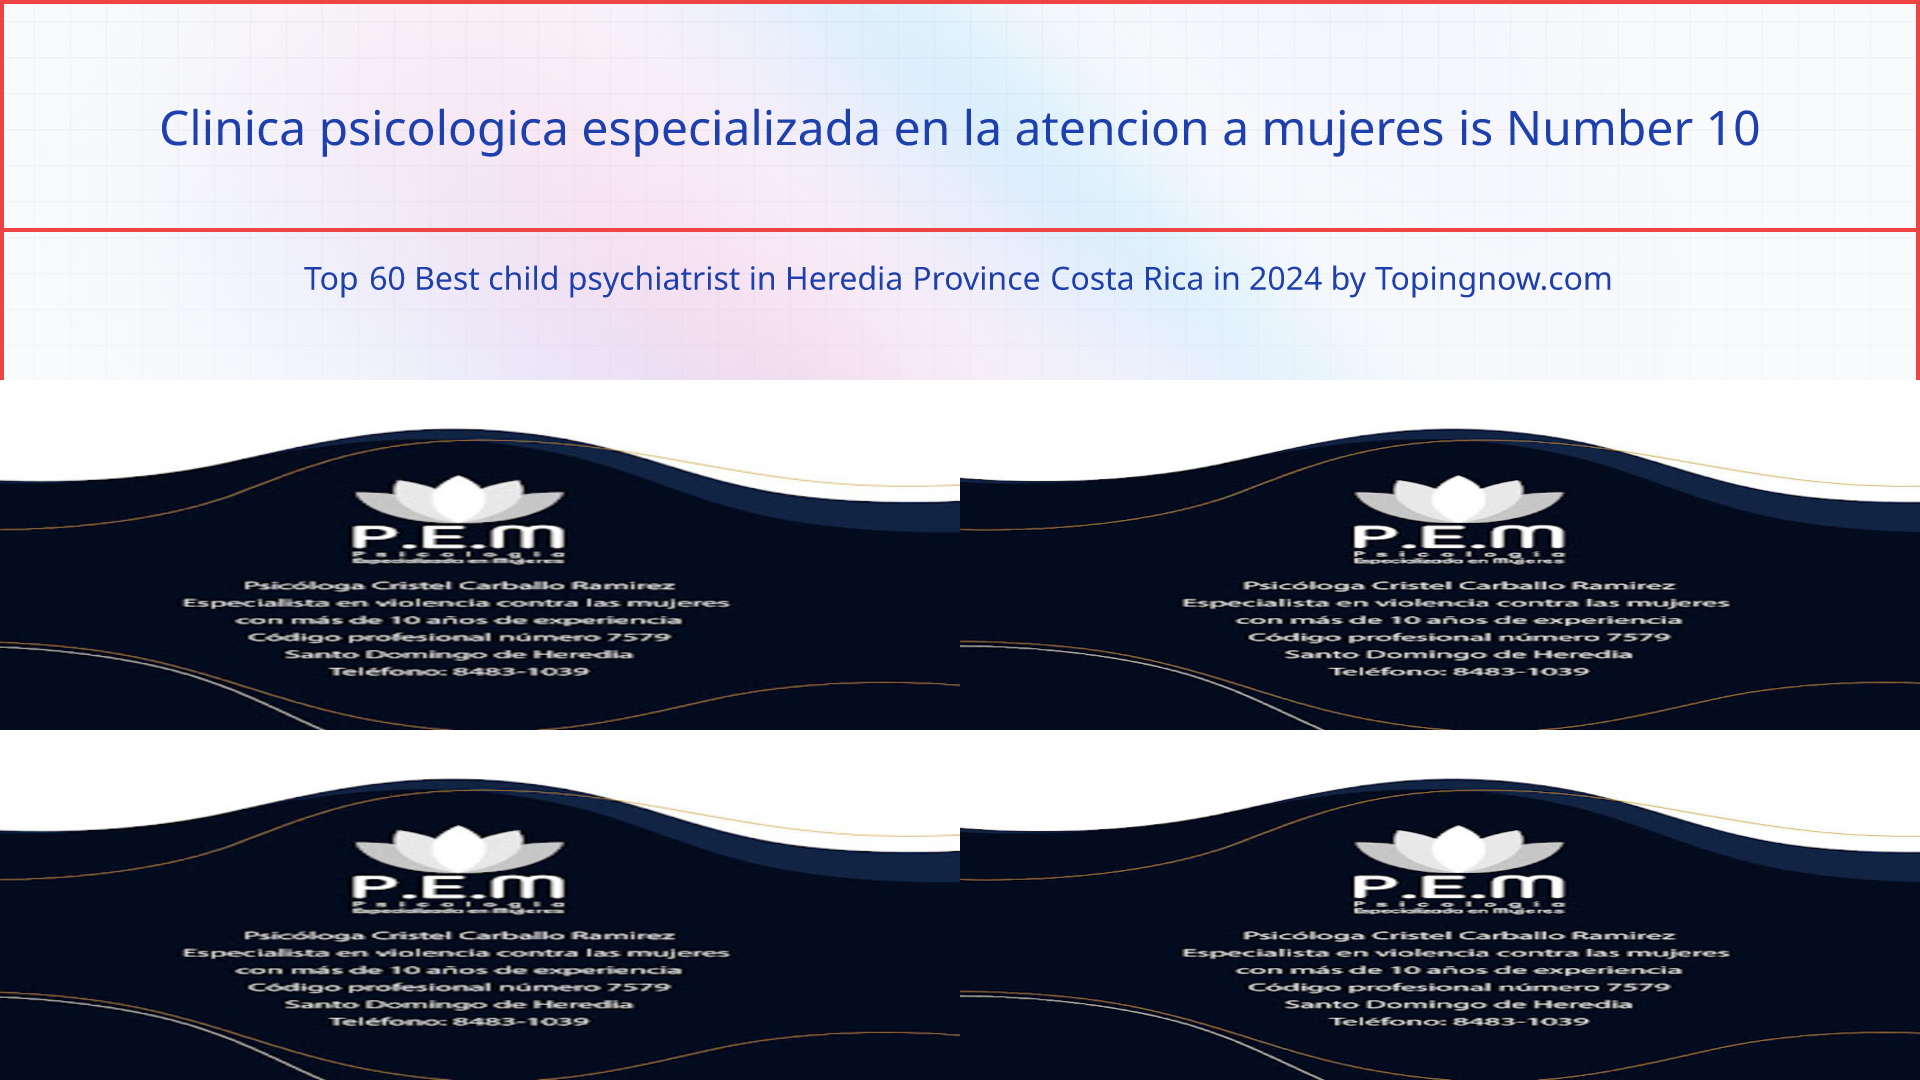 Clinica psicologica especializada en la atencion a mujeres: Top 60 Best child psychiatrist in Heredia Province Costa Rica in 2024